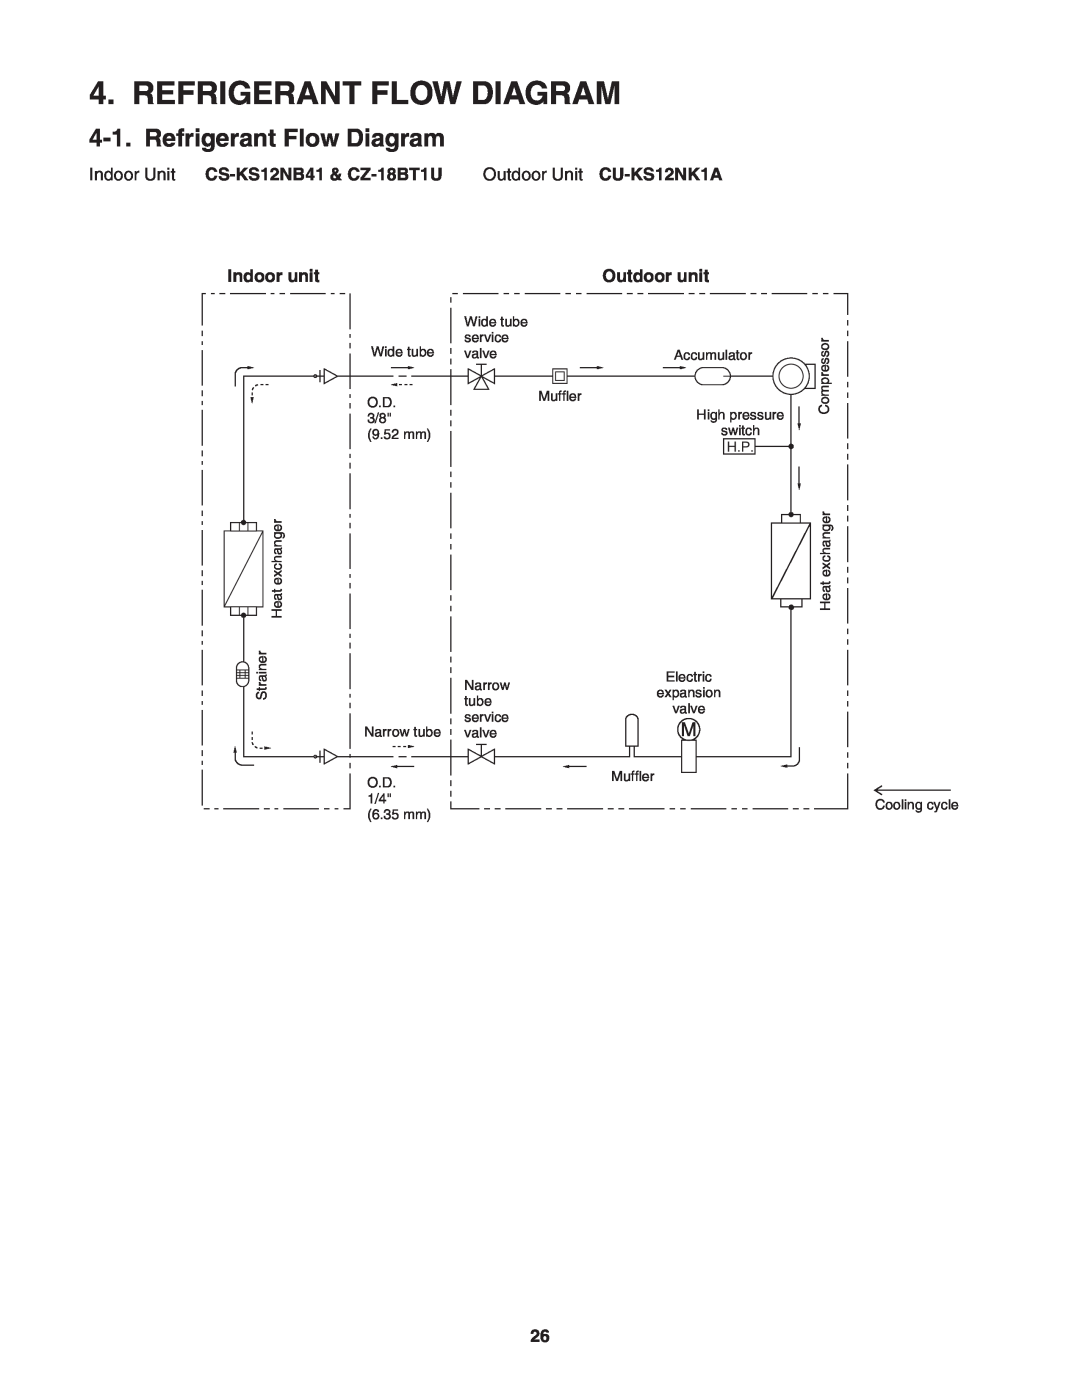 Panasonic CS-KS12NB41 & CZ-18BT1U Refrigerant Flow Diagram, Indoor Unit CS-KS12NB41& CZ-18BT1U, Outdoor Unit CU-KS12NK1A 